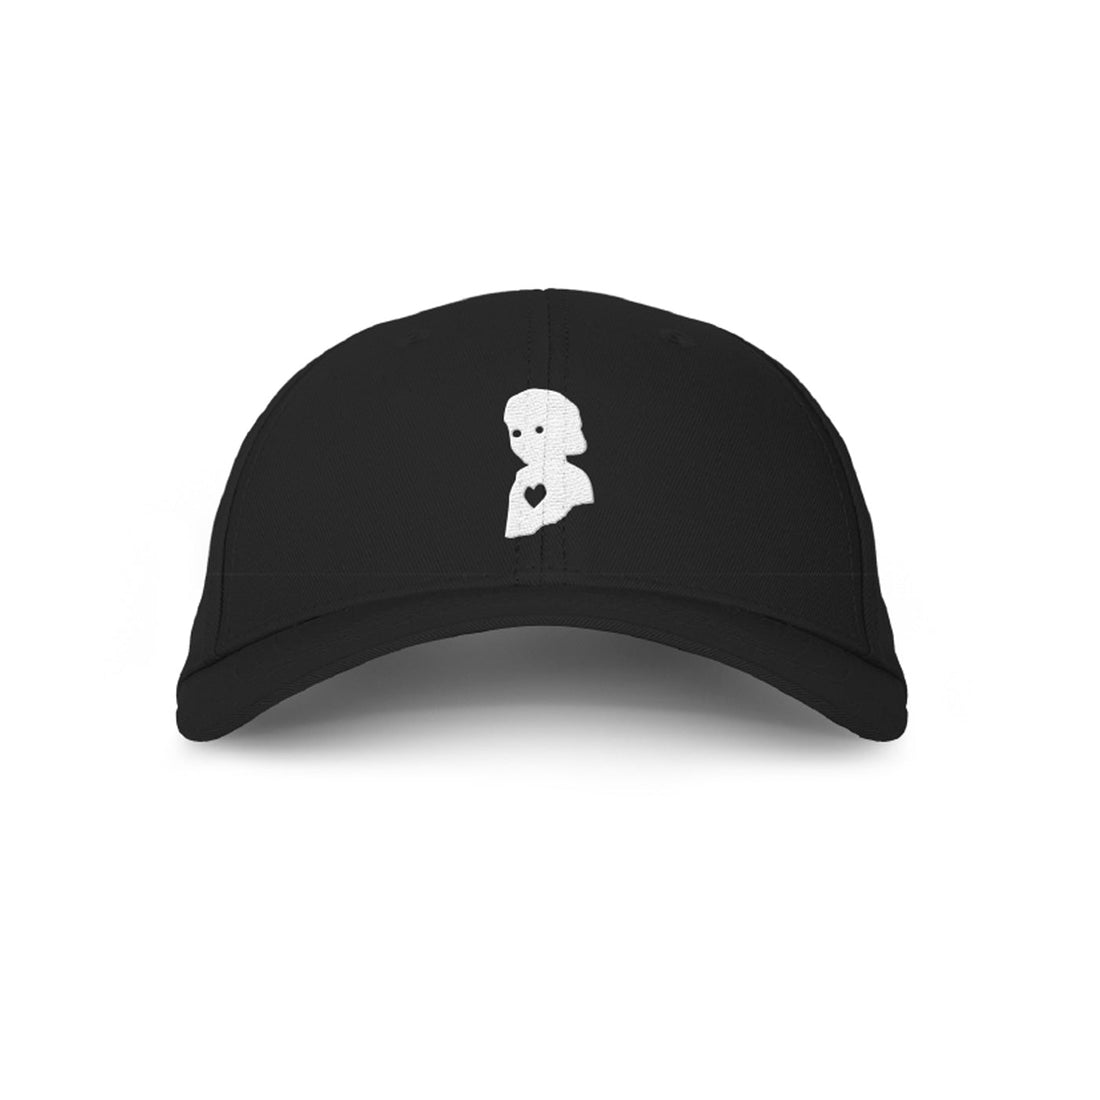 William Black - Logo Black Dad Hat